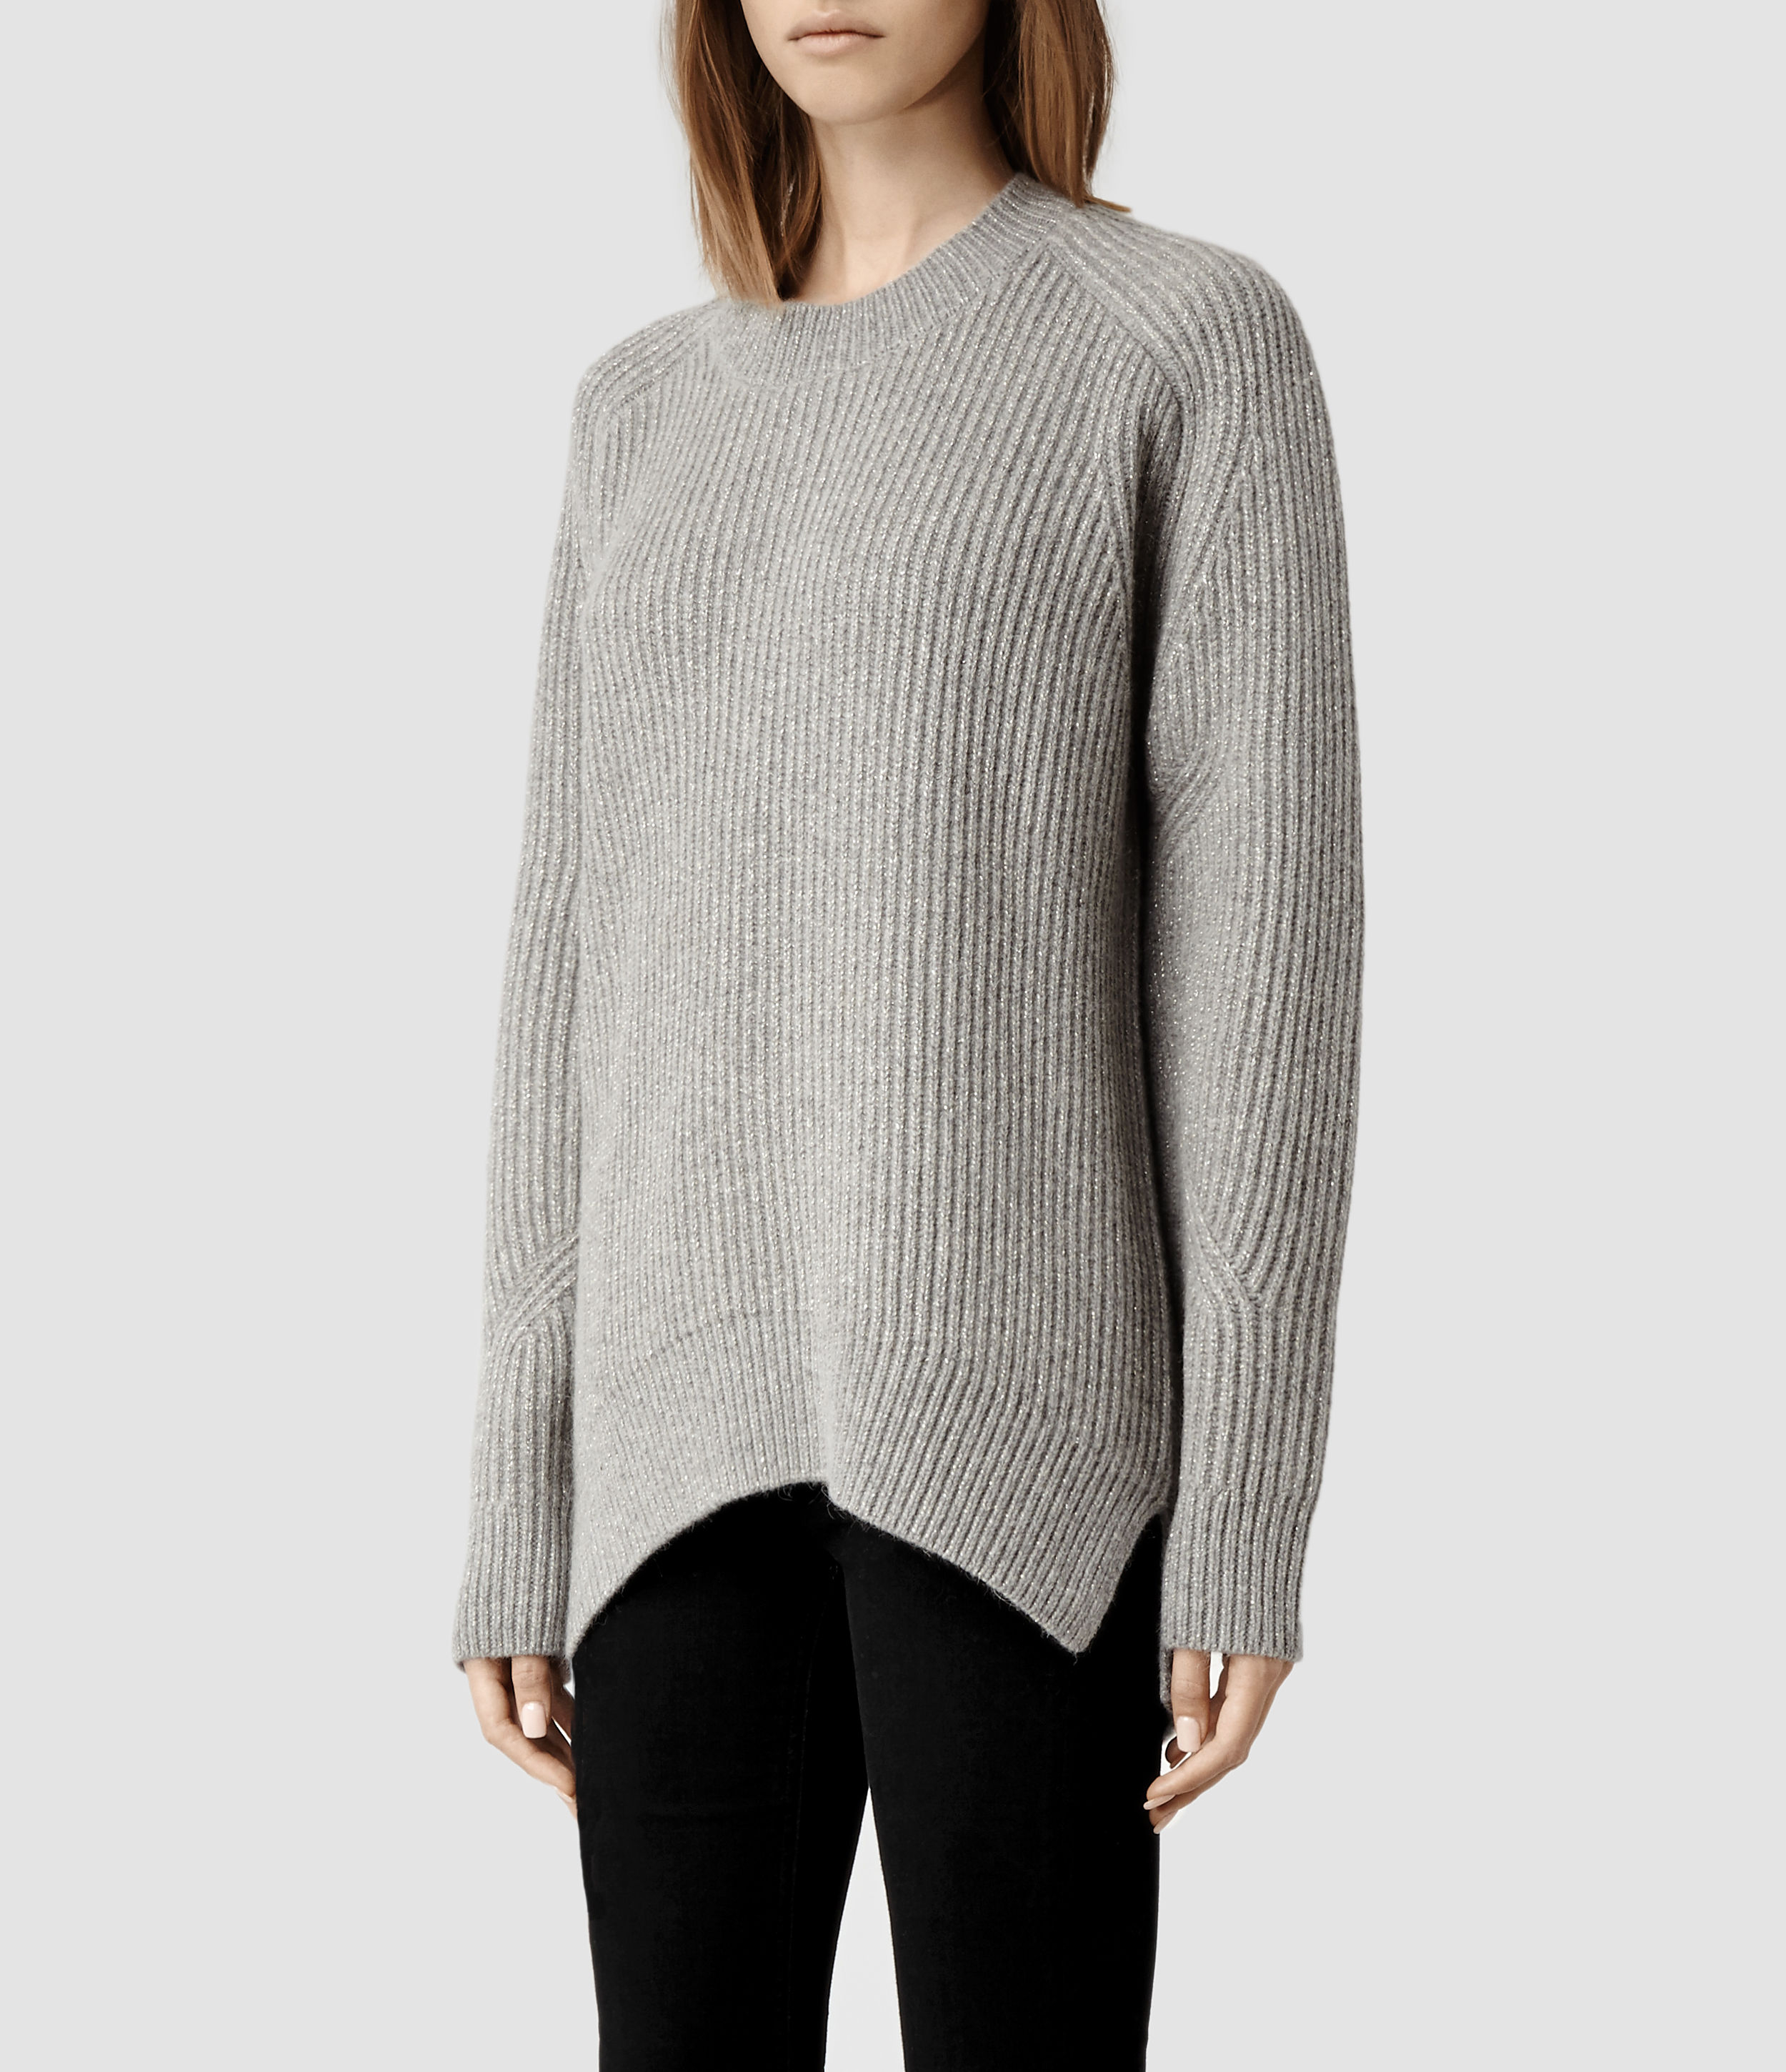 Lyst - AllSaints Walkon Sweater in Gray